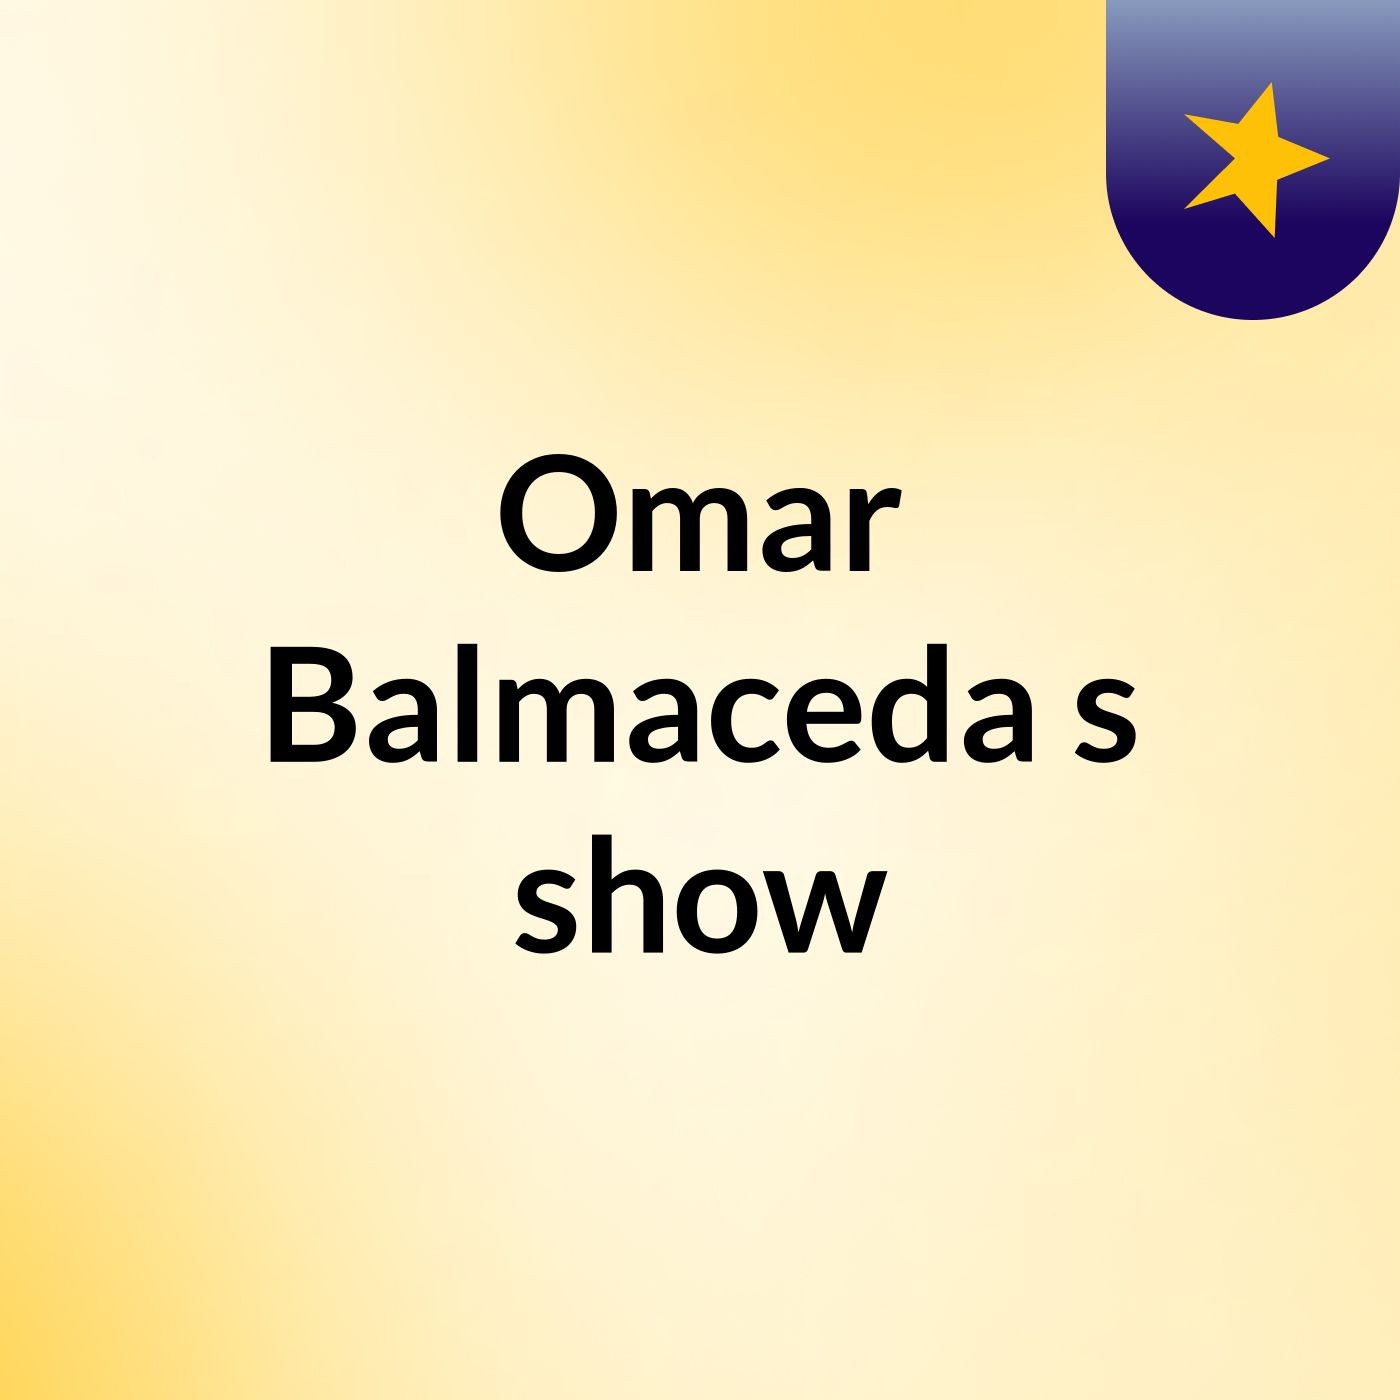 Omar Balmaceda's show